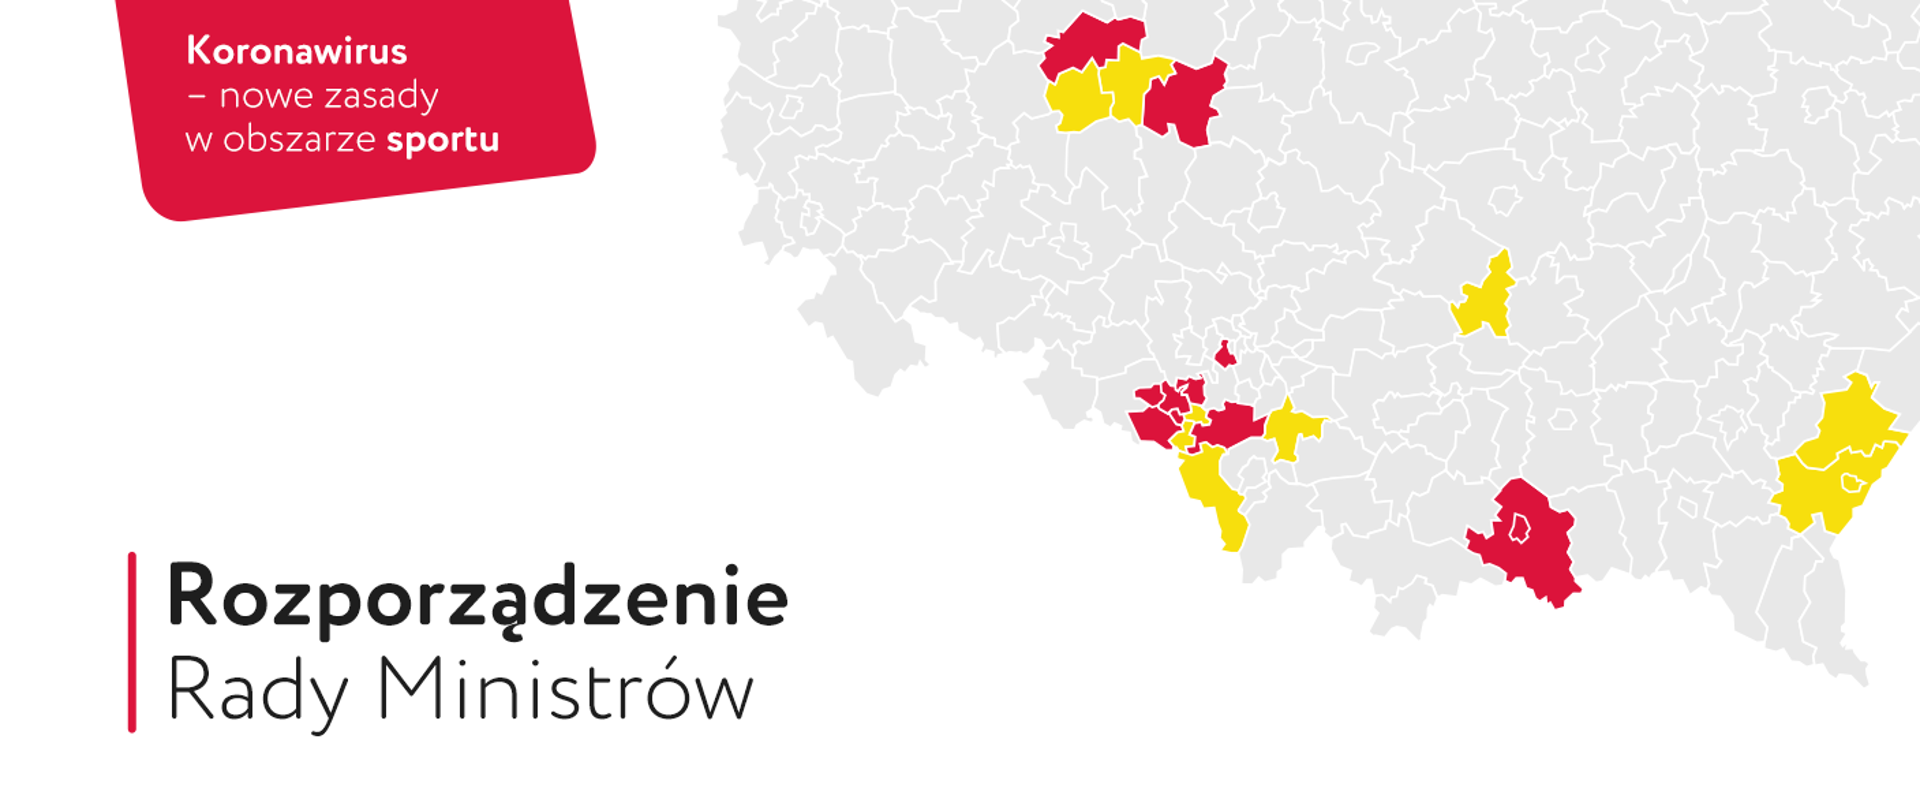 Napis "Koronawirus - nowe zasady w obszarze sportu", pod spodem "Rozporządzenie Rady Ministrów". W tle fragment mapy Polski z zaznaczonymi na żółto i czerwono dziewiętnastoma powiatami. 